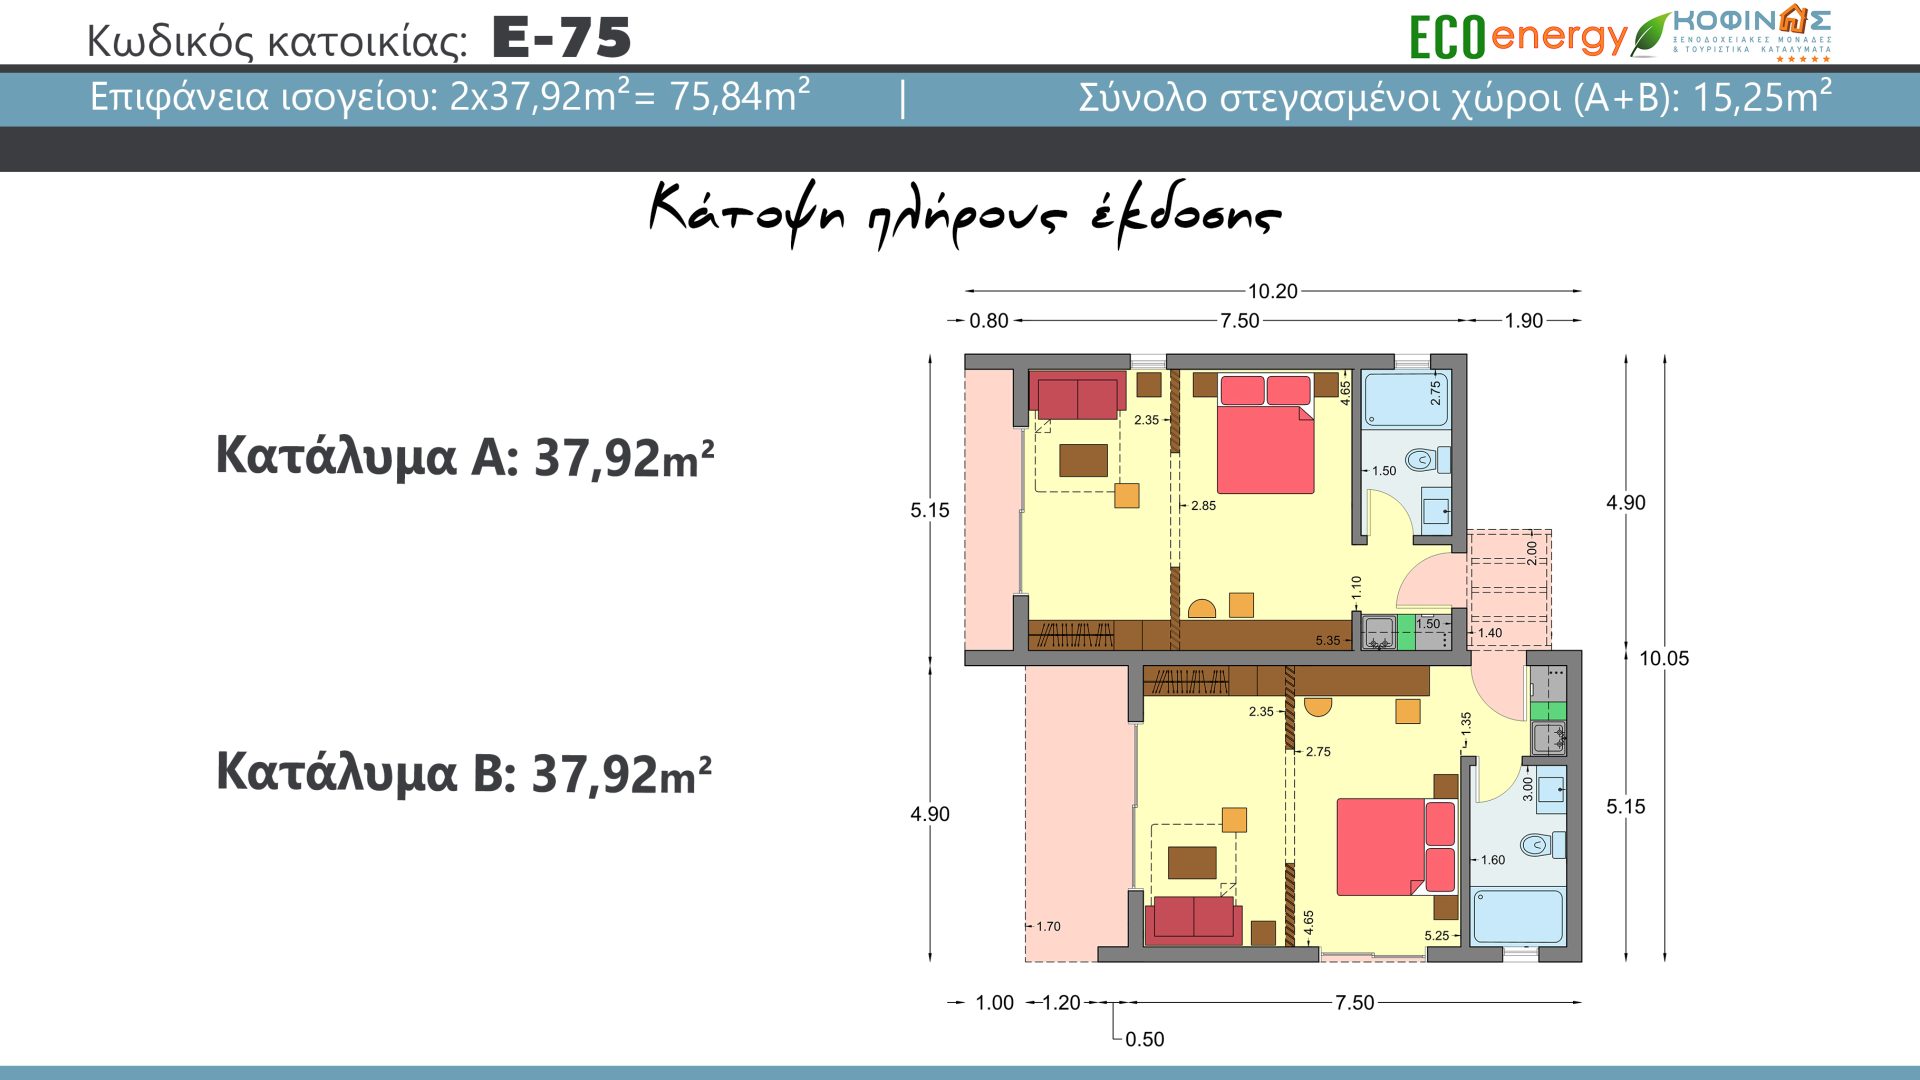 Συγκρότημα κατοικιών E-75, συνολικής επιφάνειας 2 x 37,92 = 75,84 τ.μ., συνολική επιφάνεια στεγασμένων χώρων 25,25 τ.μ.